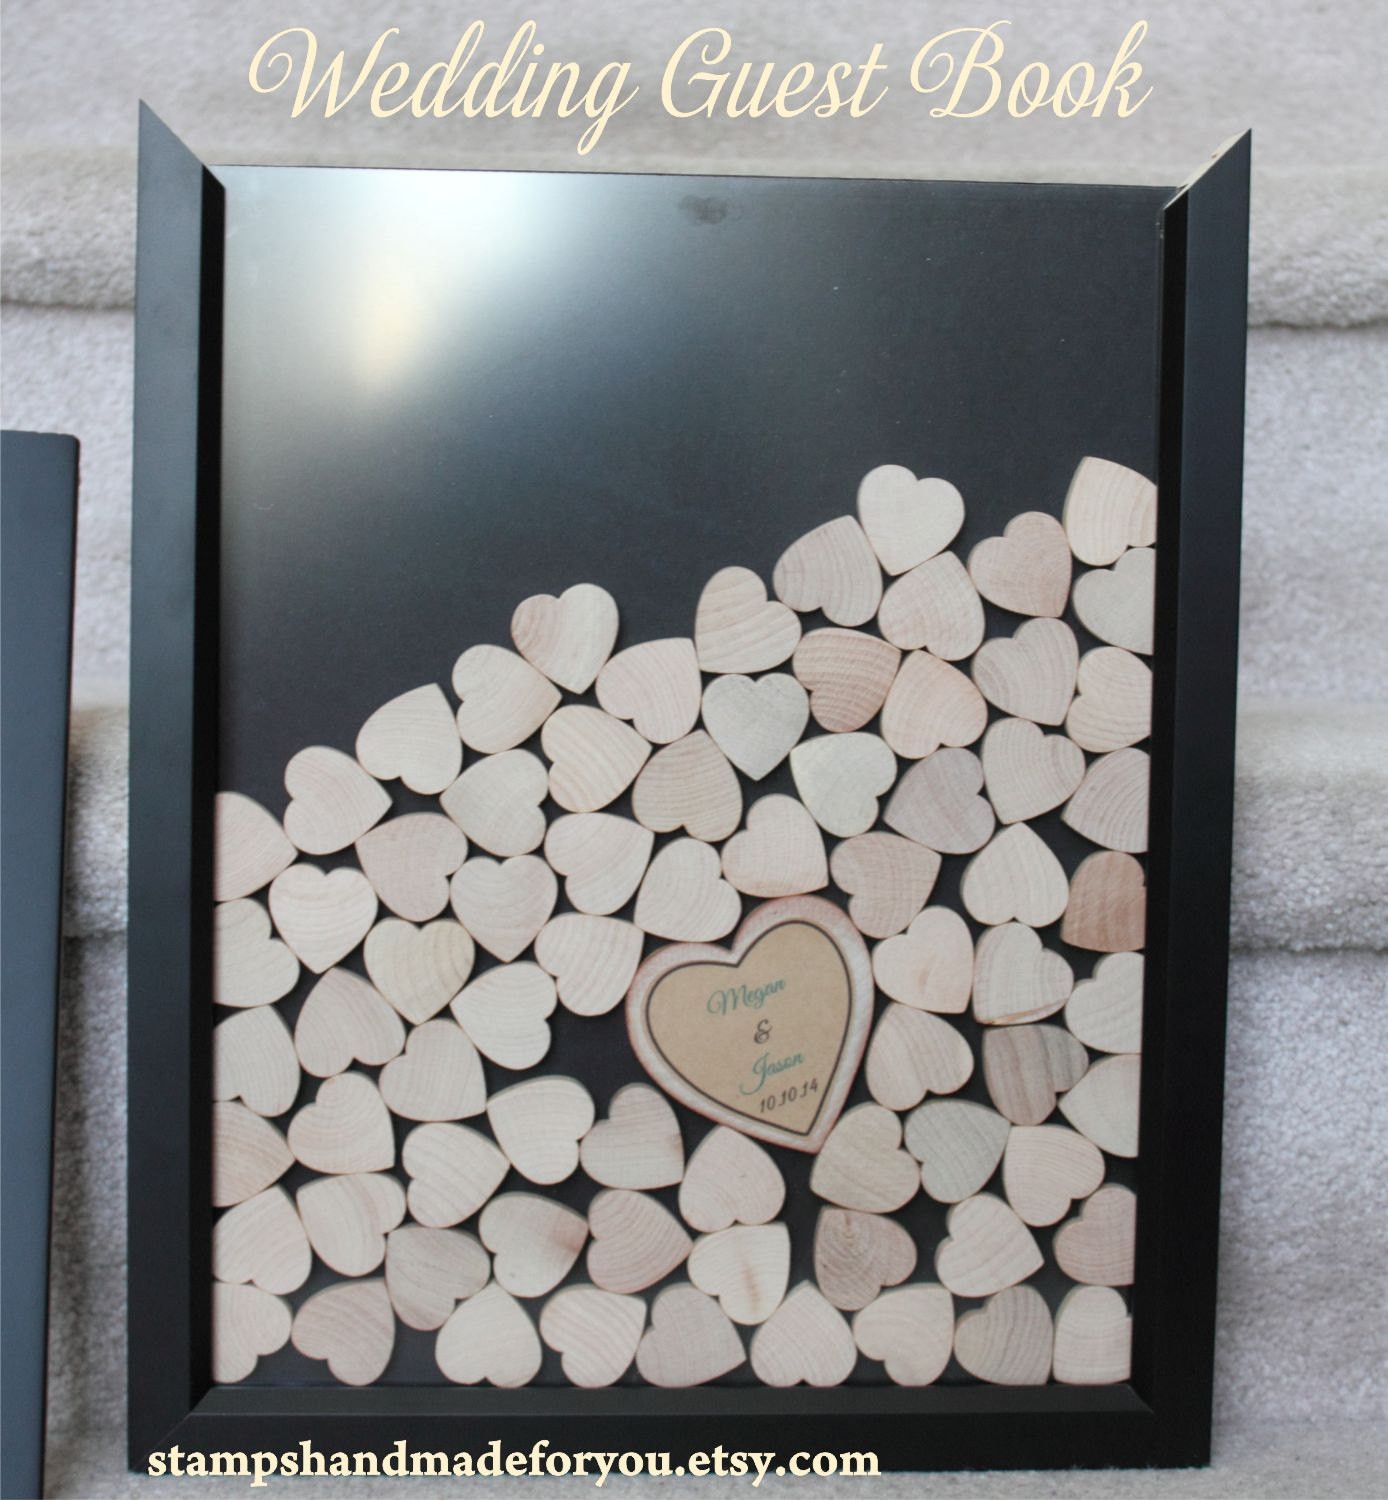 Wedding Guest Book Frame
 Drop box guest book heart frame wedding guest by